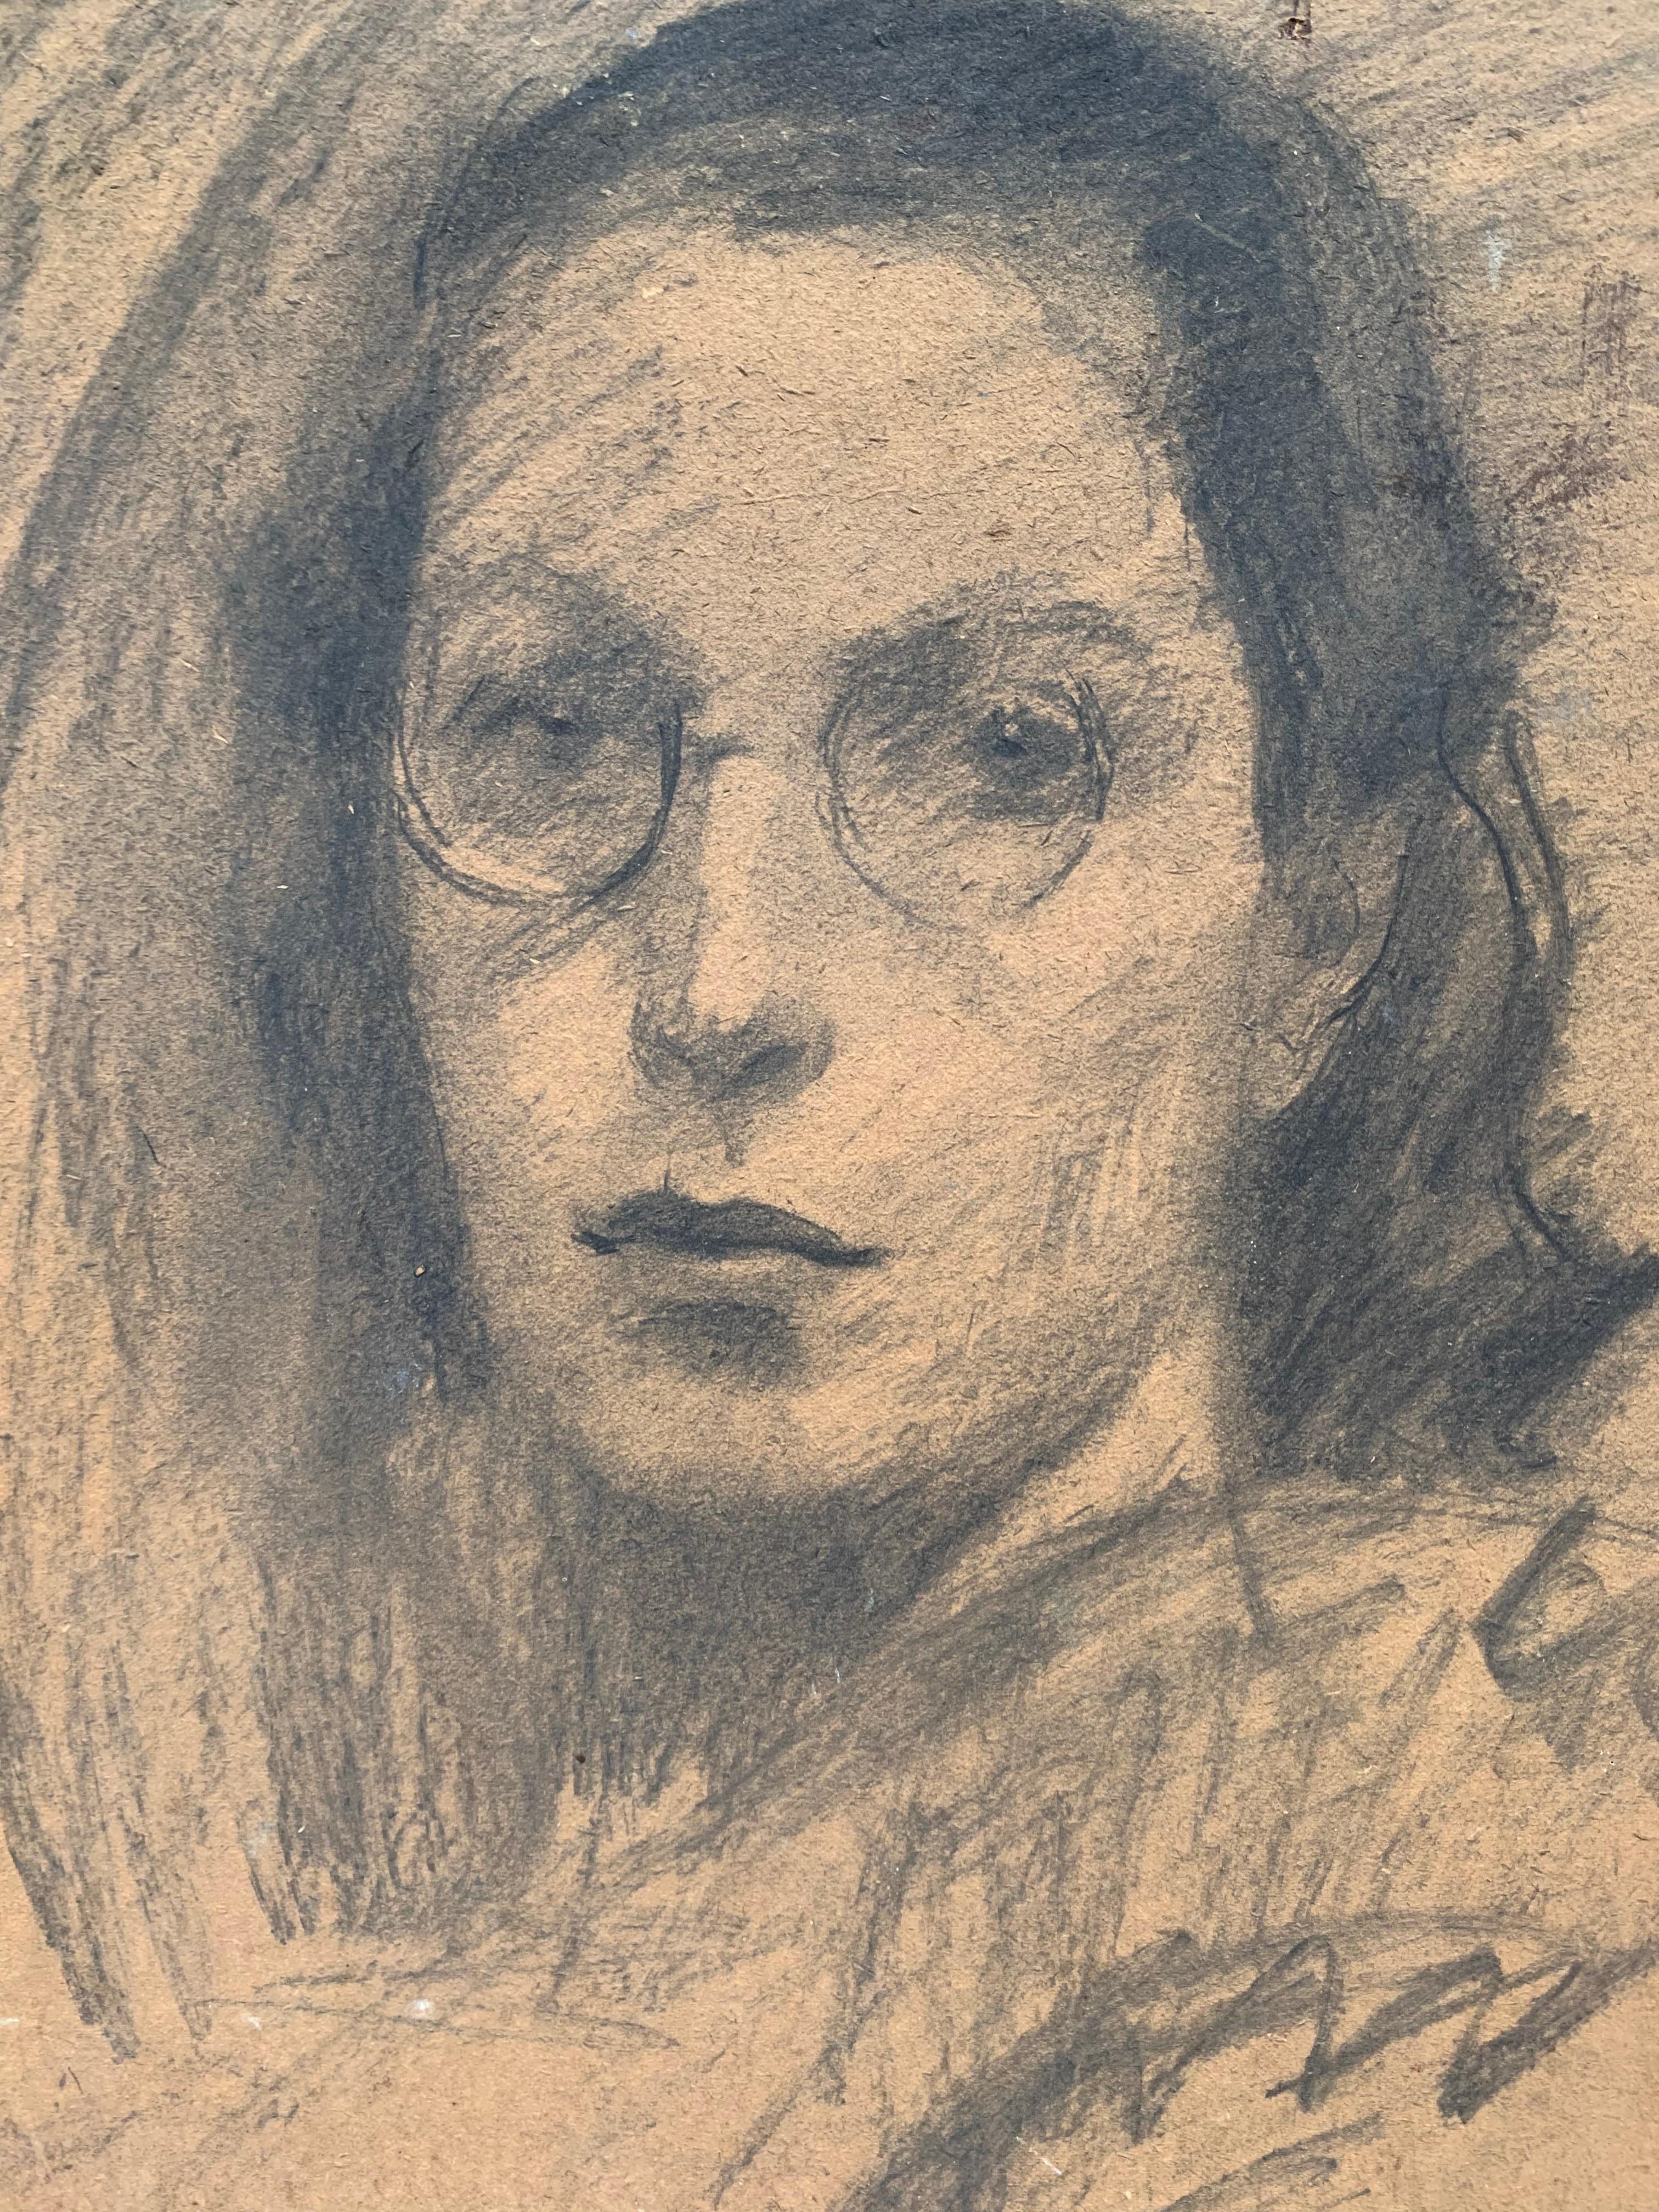 Mädchen mit Brille. Etwa 1920-30. Doppelporträt. Spalmach Gino
(Rom, 1900 - 1966). Auf zwei Seiten gemalt: auf der einen Seite ist die junge Frau mit Brille in Kohle/Bleistift monochrom dargestellt; auf der anderen Seite - ein lebendiges und